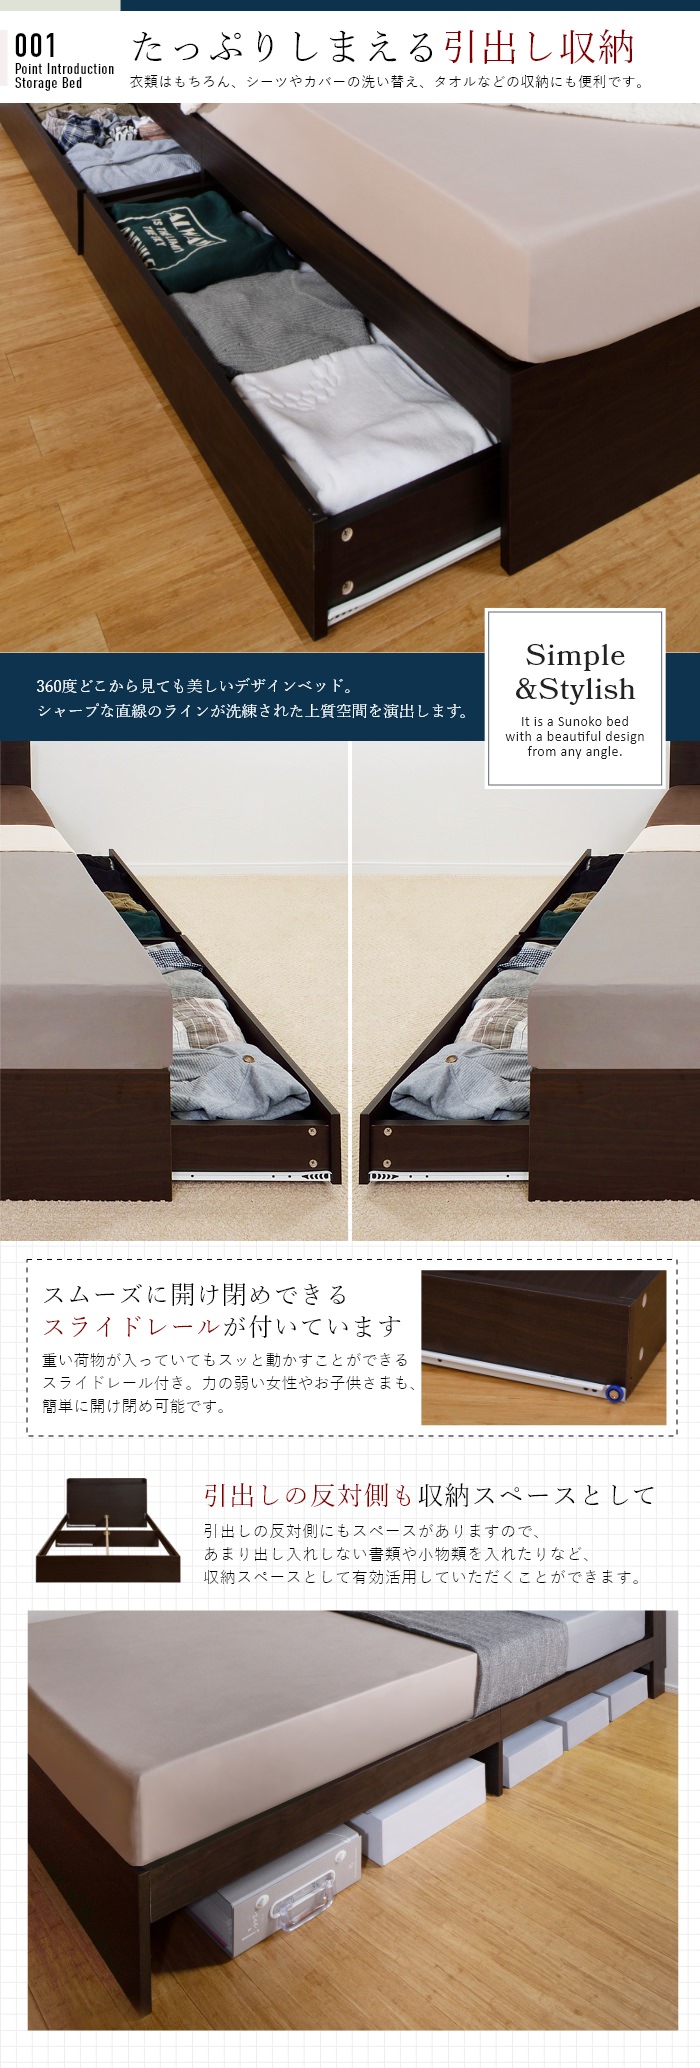 安定感のあるベッドデザイン 棚付引出し収納ベッド ダークブラウン (2台セット)の詳細 | 日本最大級のベッド通販ベッドスタイル